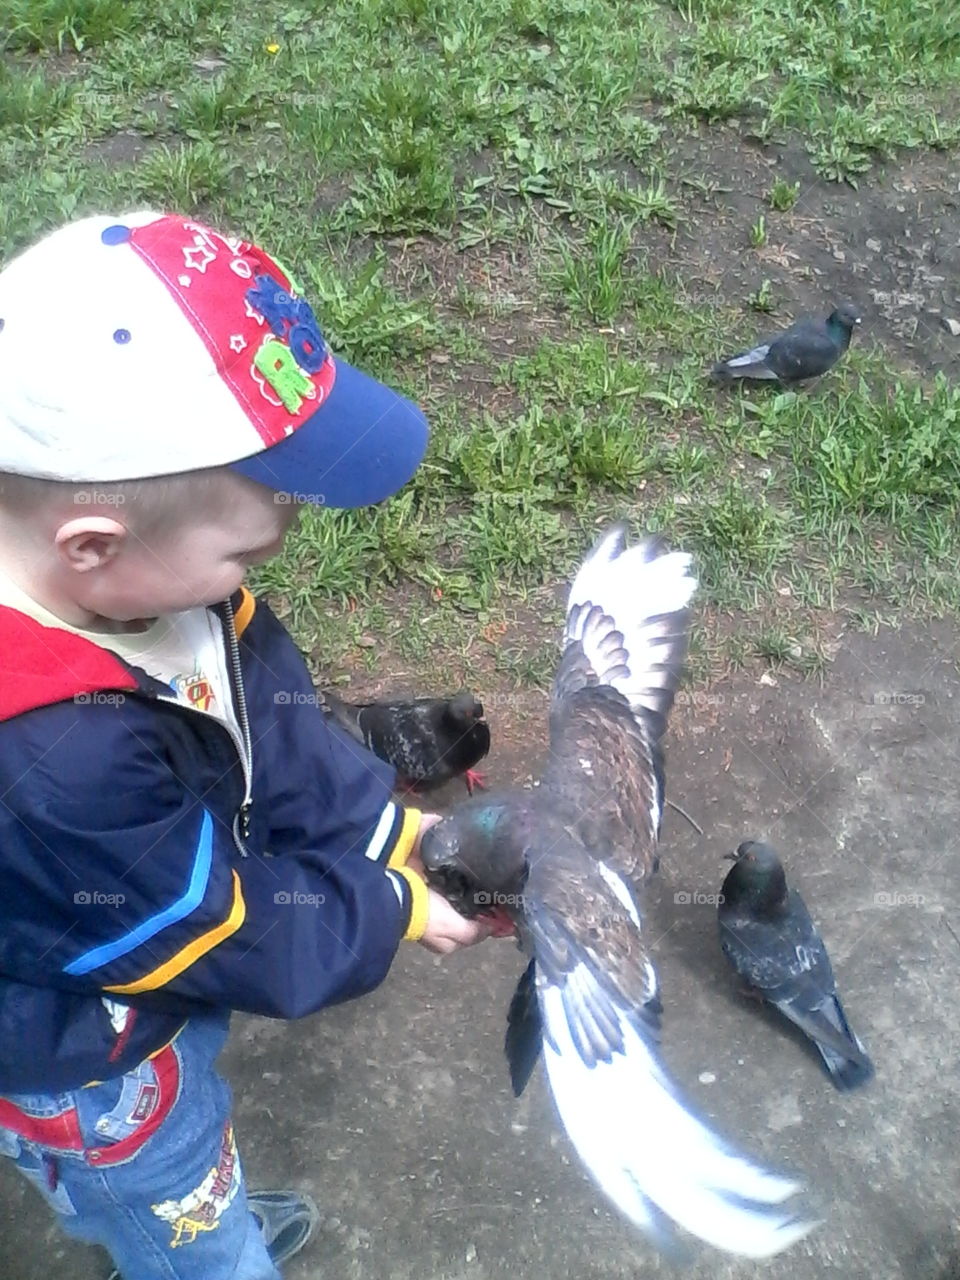 feeding birds. My son feeding pigeons